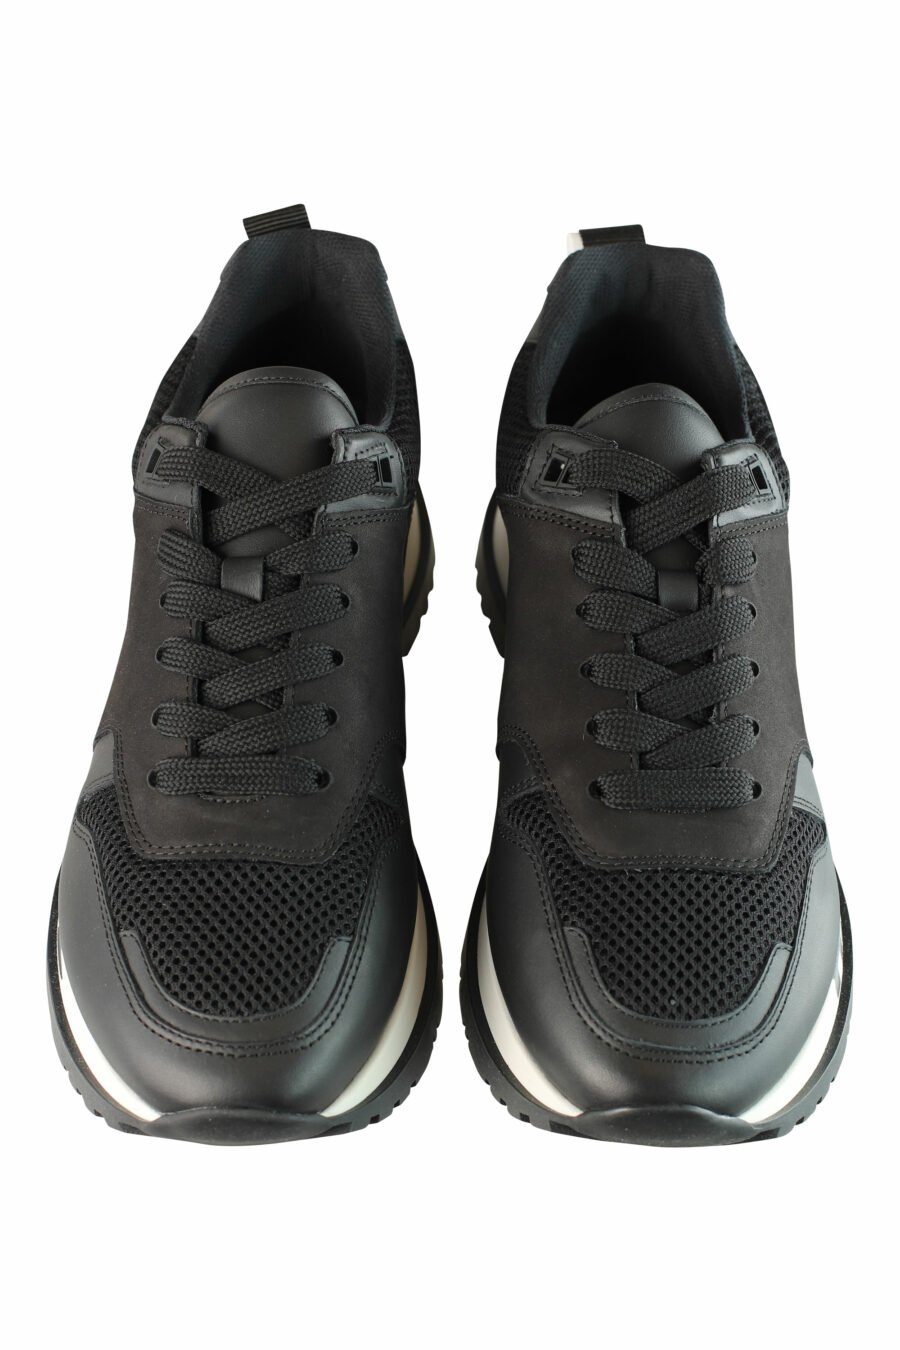 Chaussures de course noires avec semelle blanche et logo noir - IMG 1361